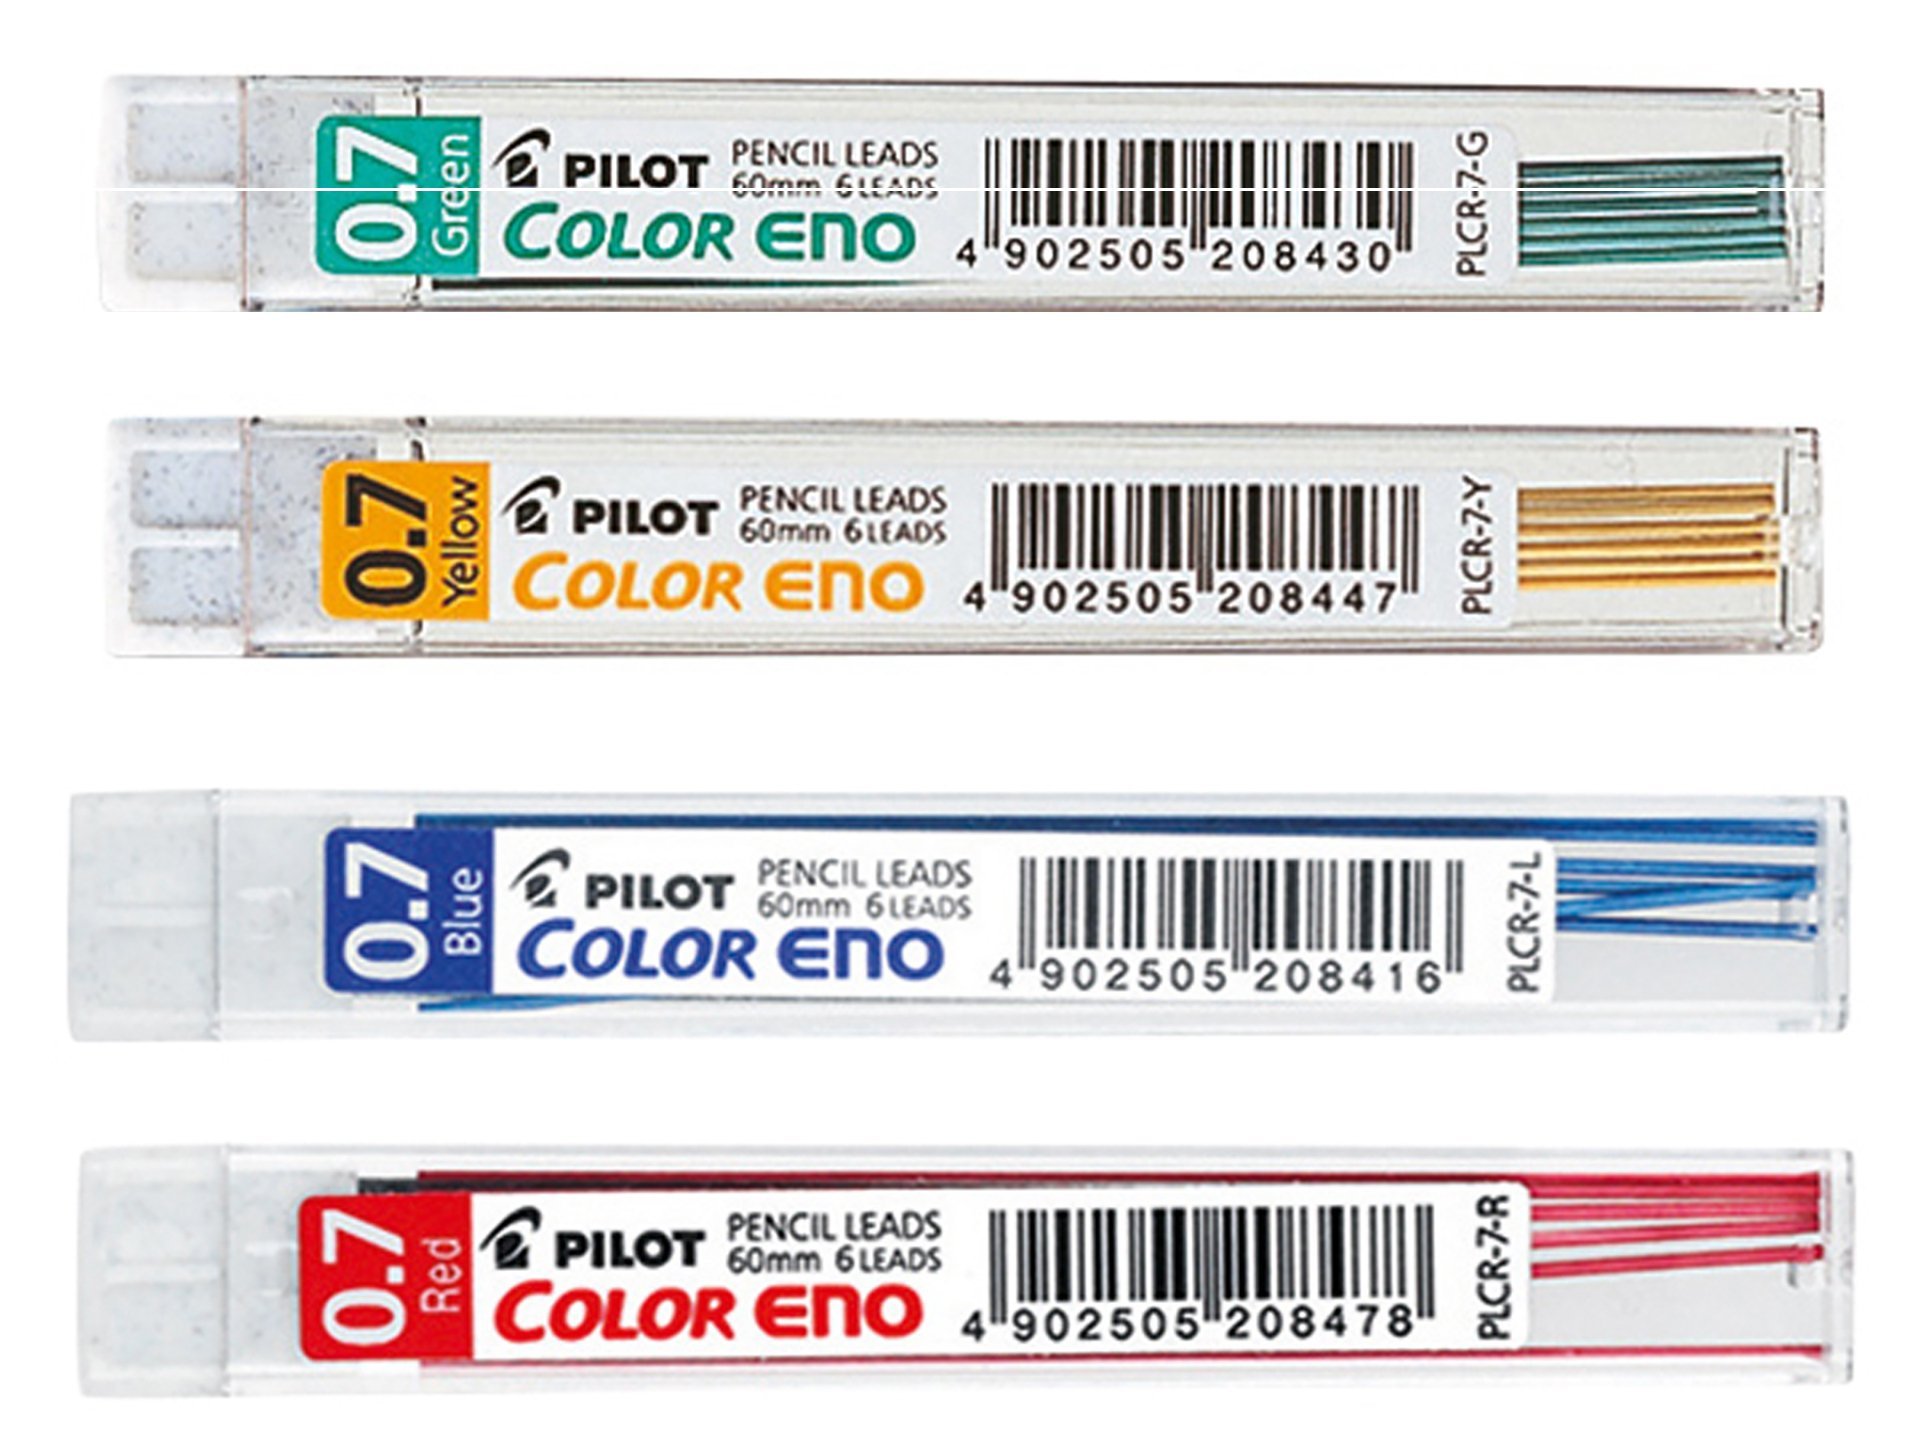 PLCR-7-P Pink Pencil Leads 3 x tubes Pilot Color Eno 0.7mm